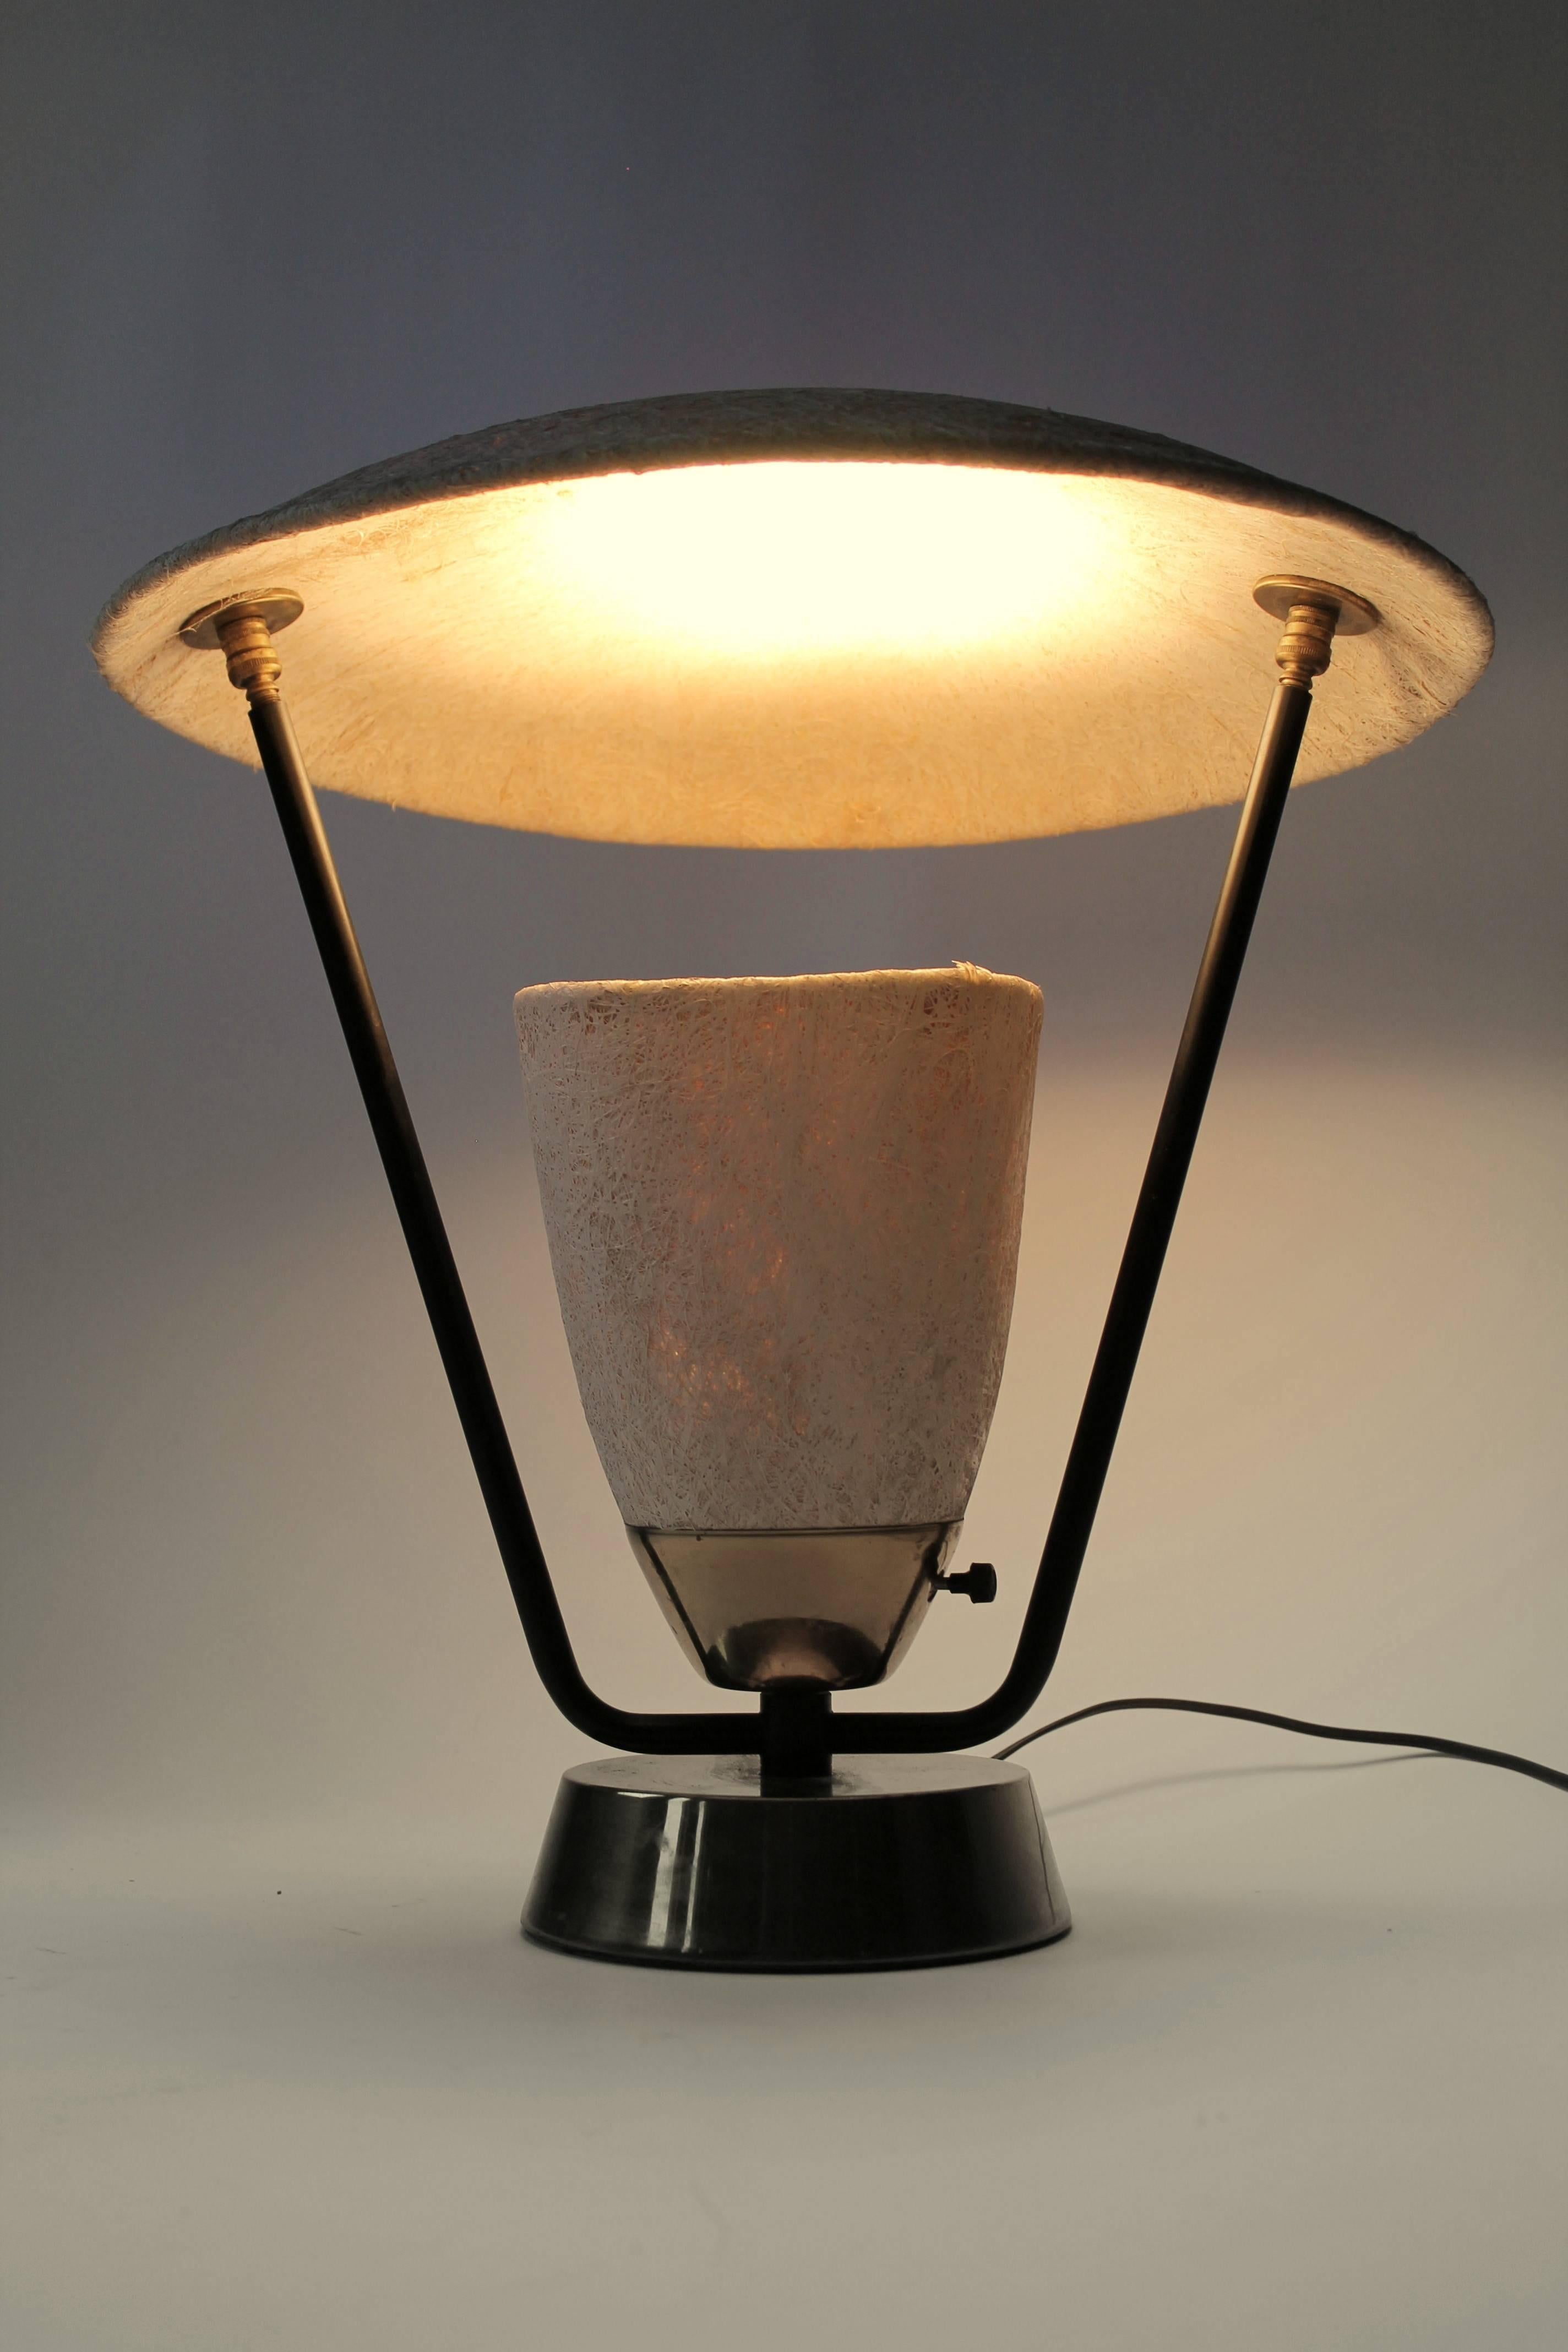 fiberglass lampshade material